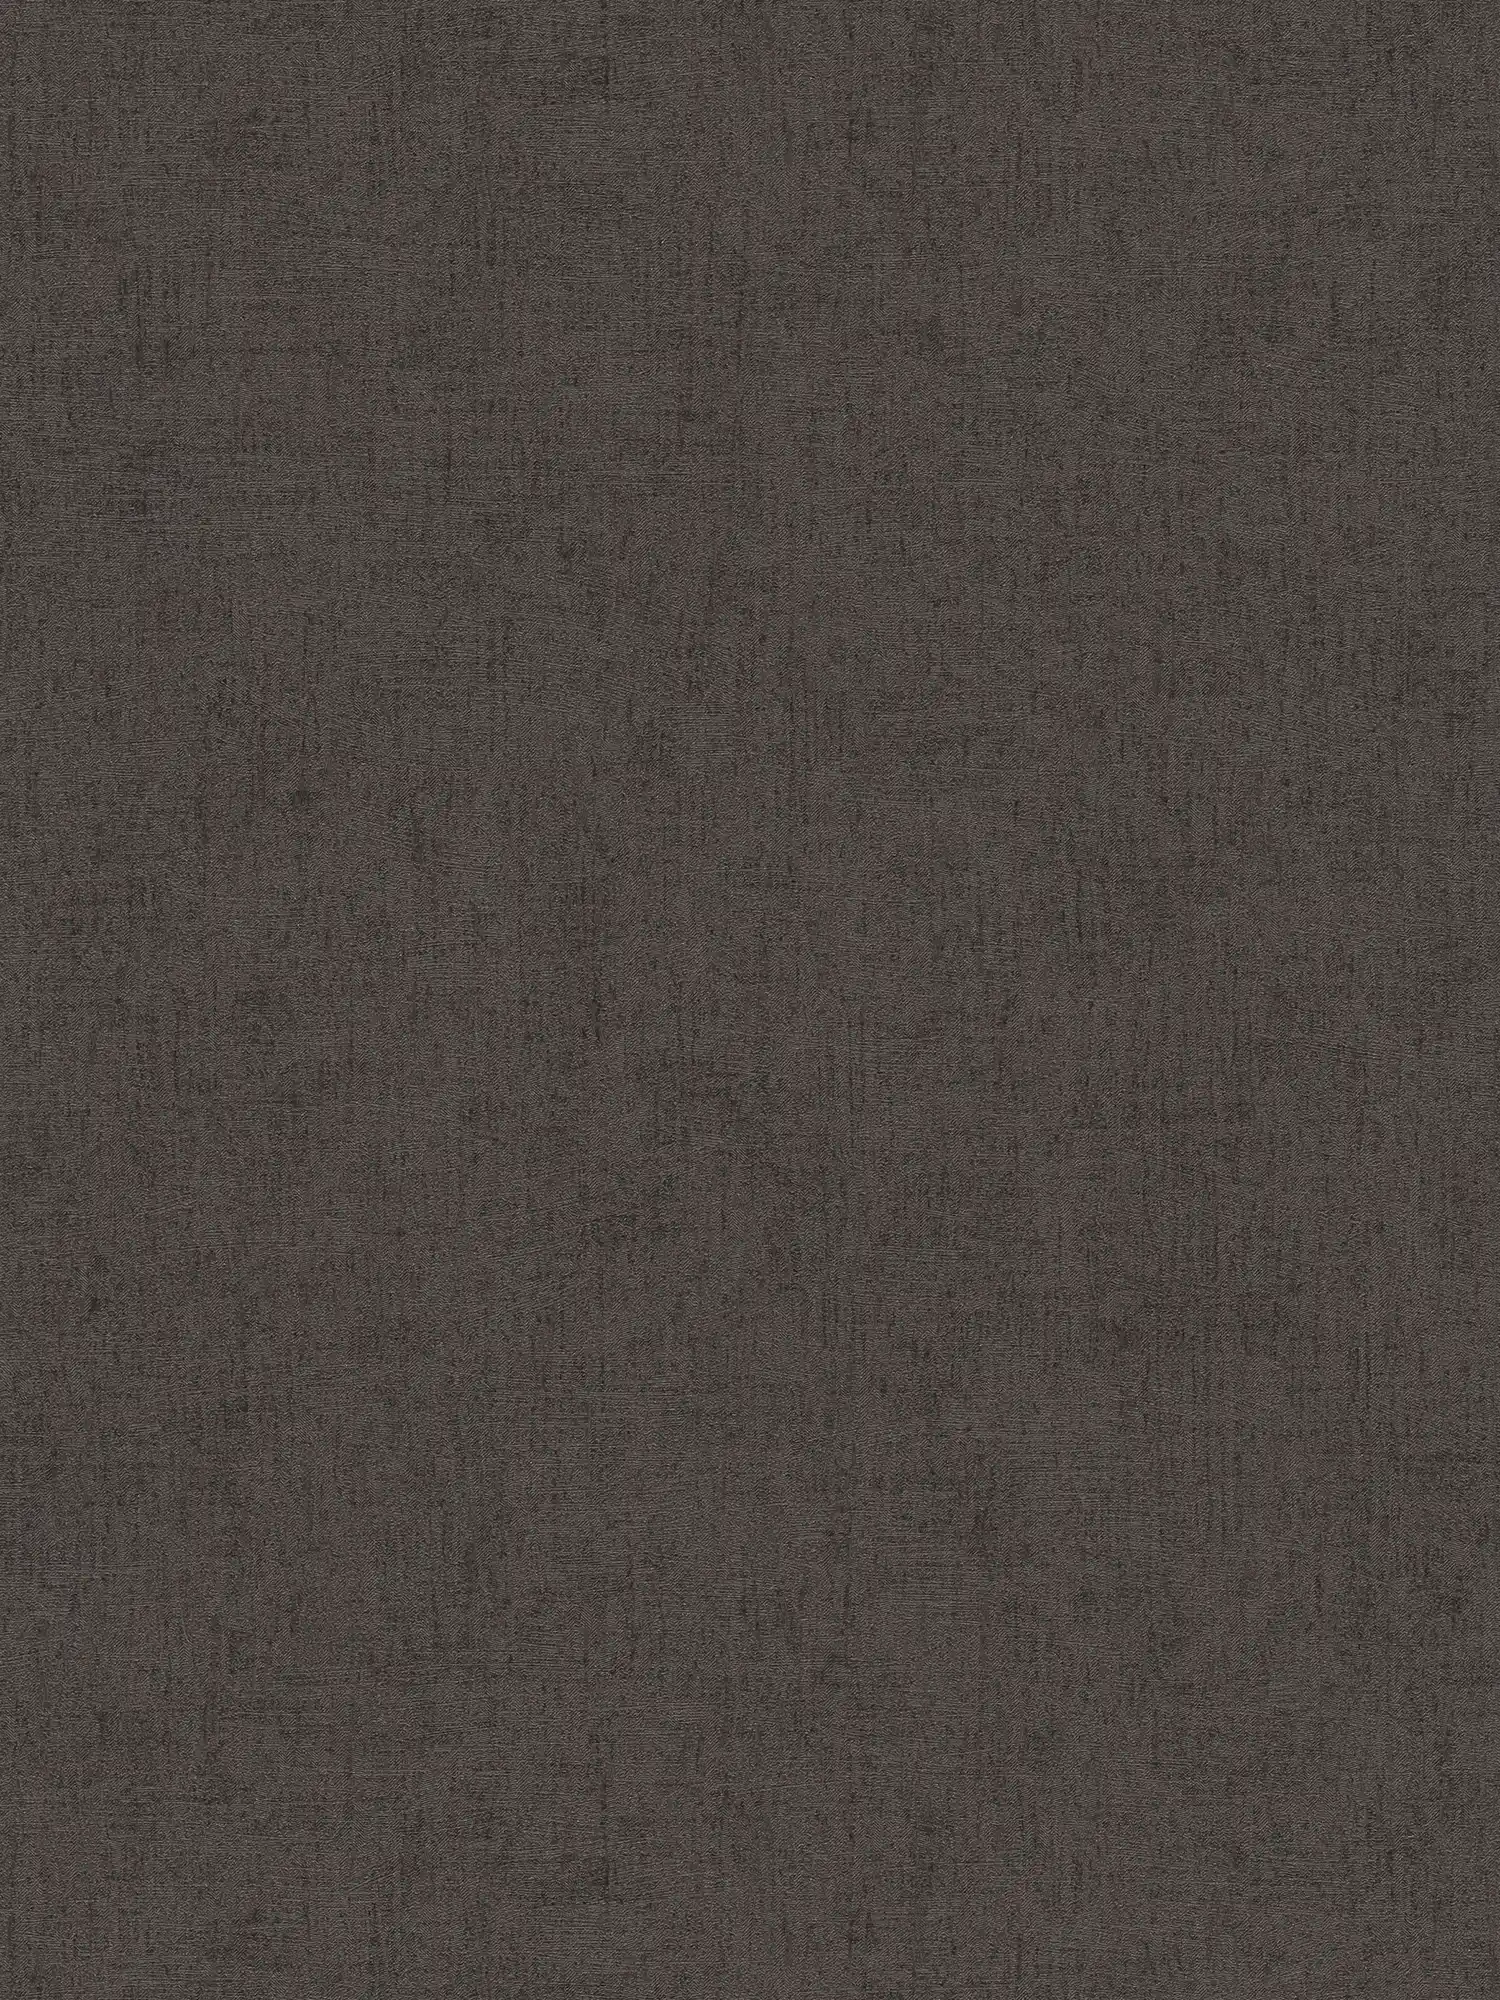 Carta da parati marrone scuro con effetto lucido e metallizzato - marrone, metallizzato
